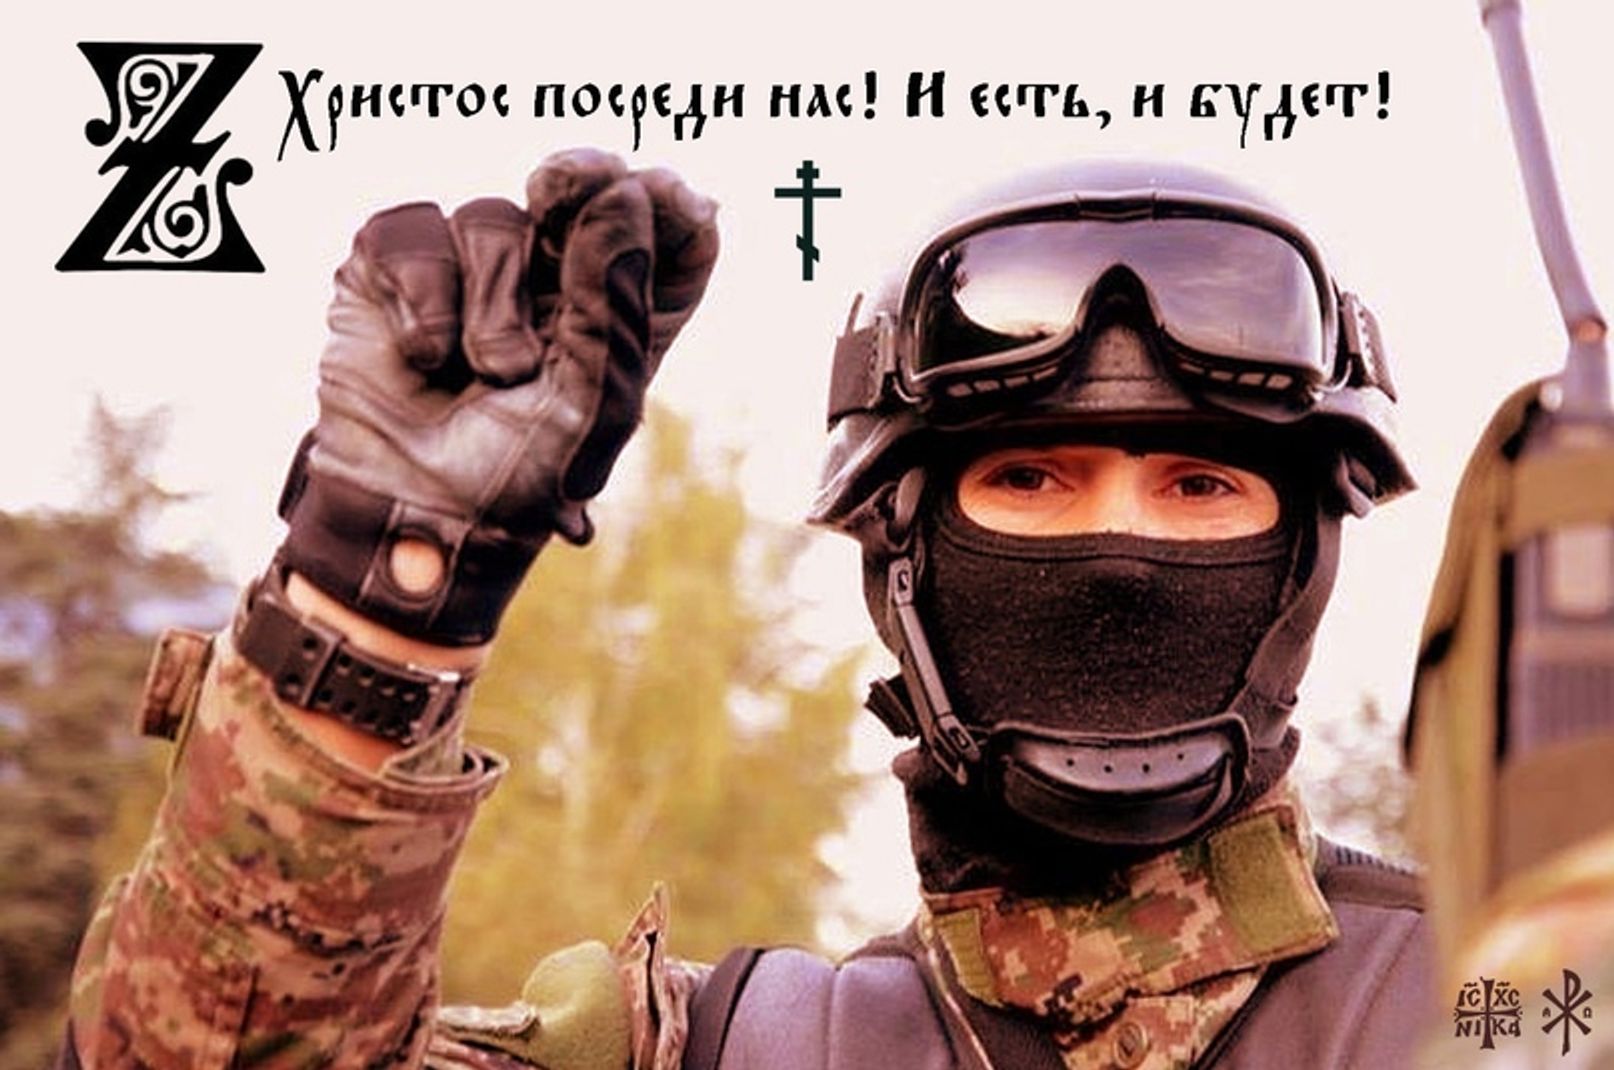 Изображение из социальной сети «ВКонтакте»